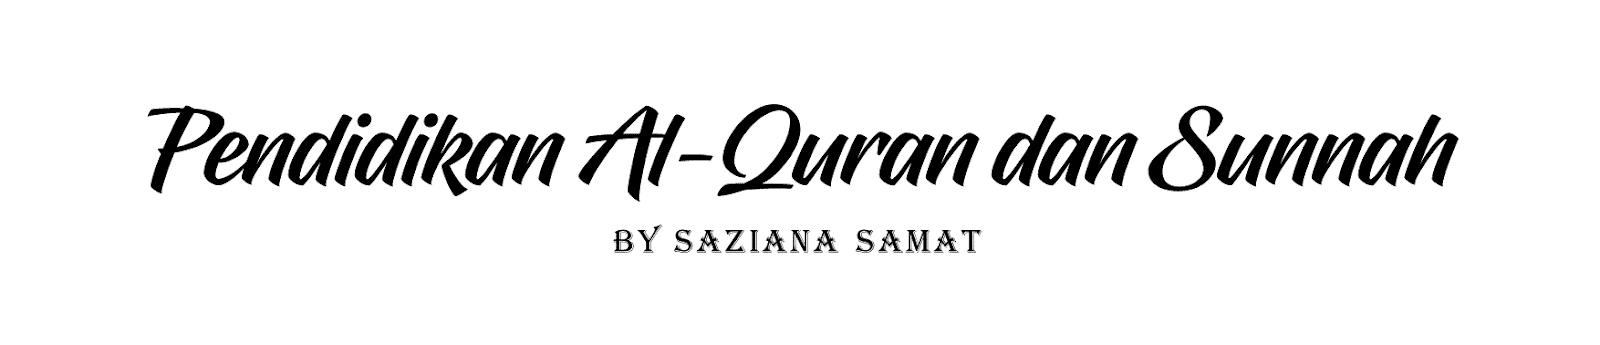 Pendidikan Al-Quran dan Sunnah